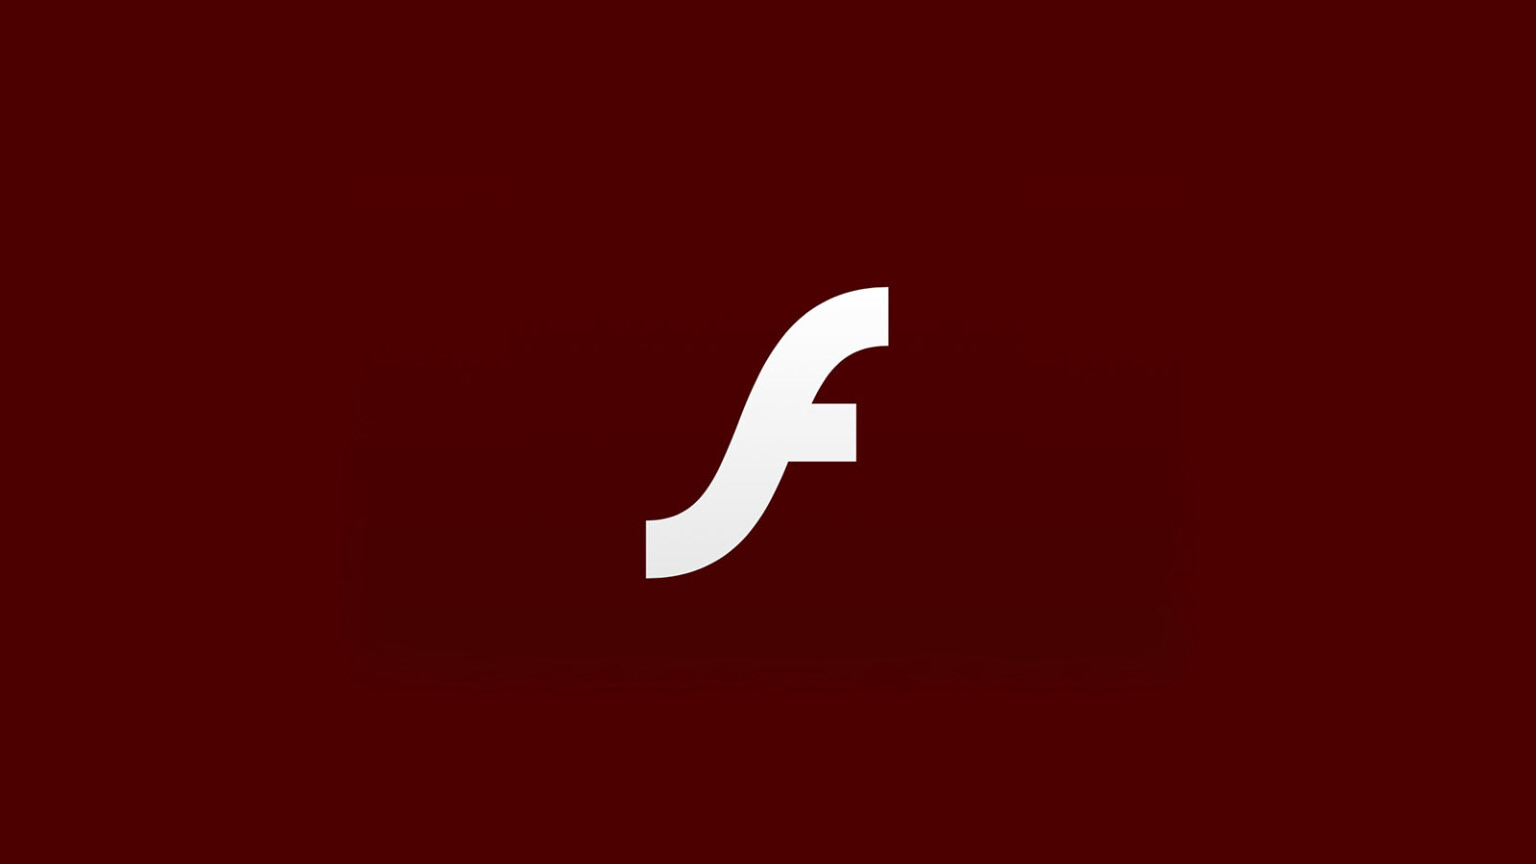 Adobe flash plugin tor browser скачать видео в тор браузере гидра